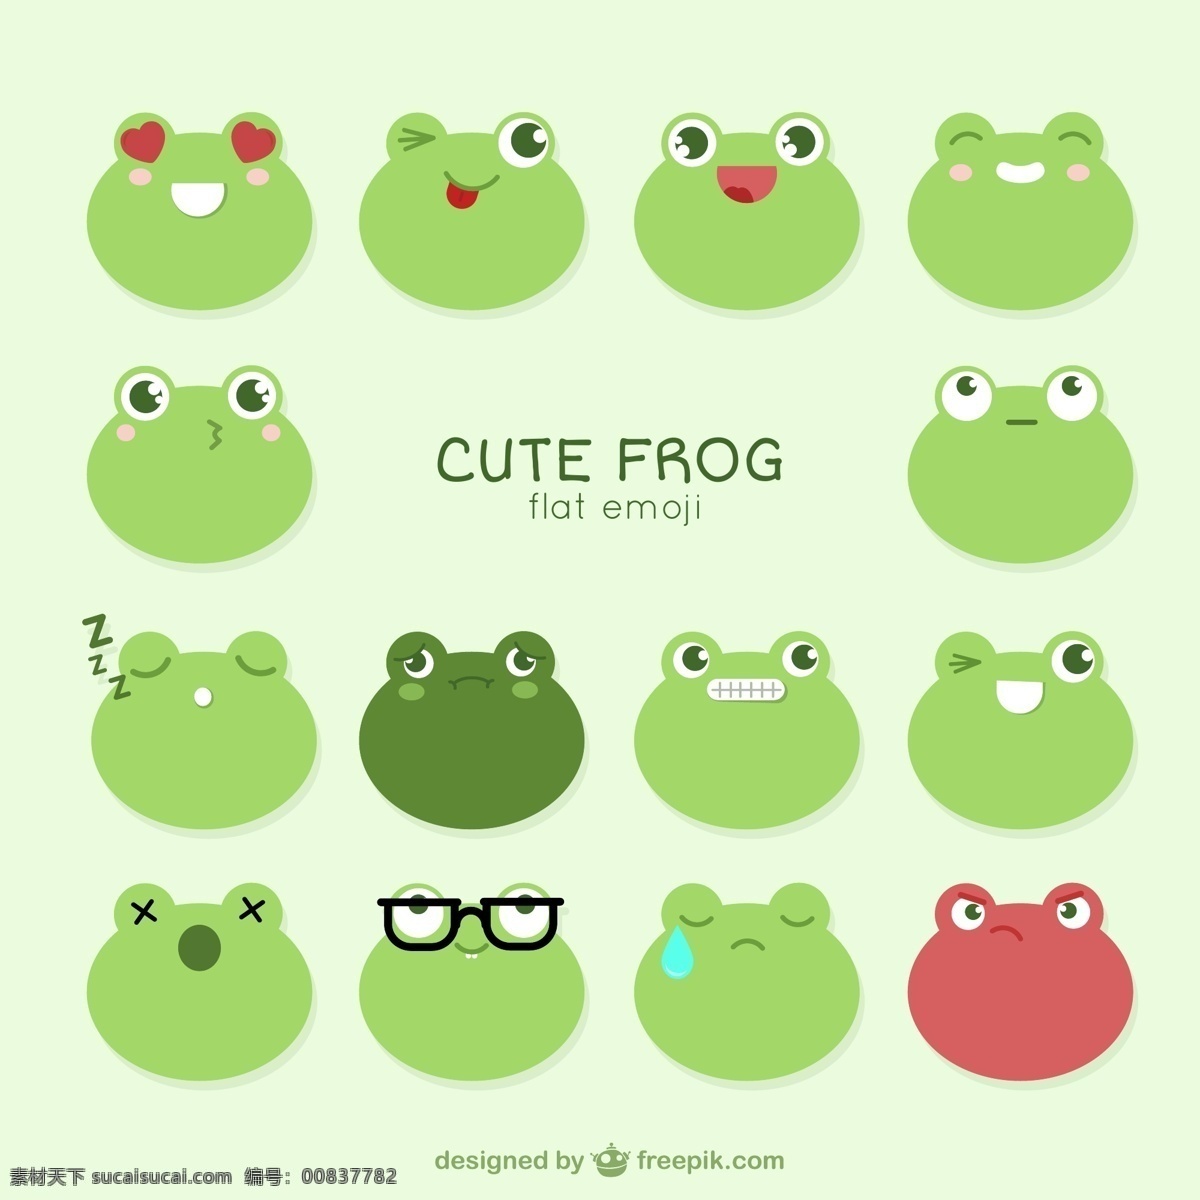 组 青蛙 可爱 表情 包 卡通 卡哇伊 矢量素材 动物 小动物 创意设计 简约 创意 元素 生物元素 动物元素